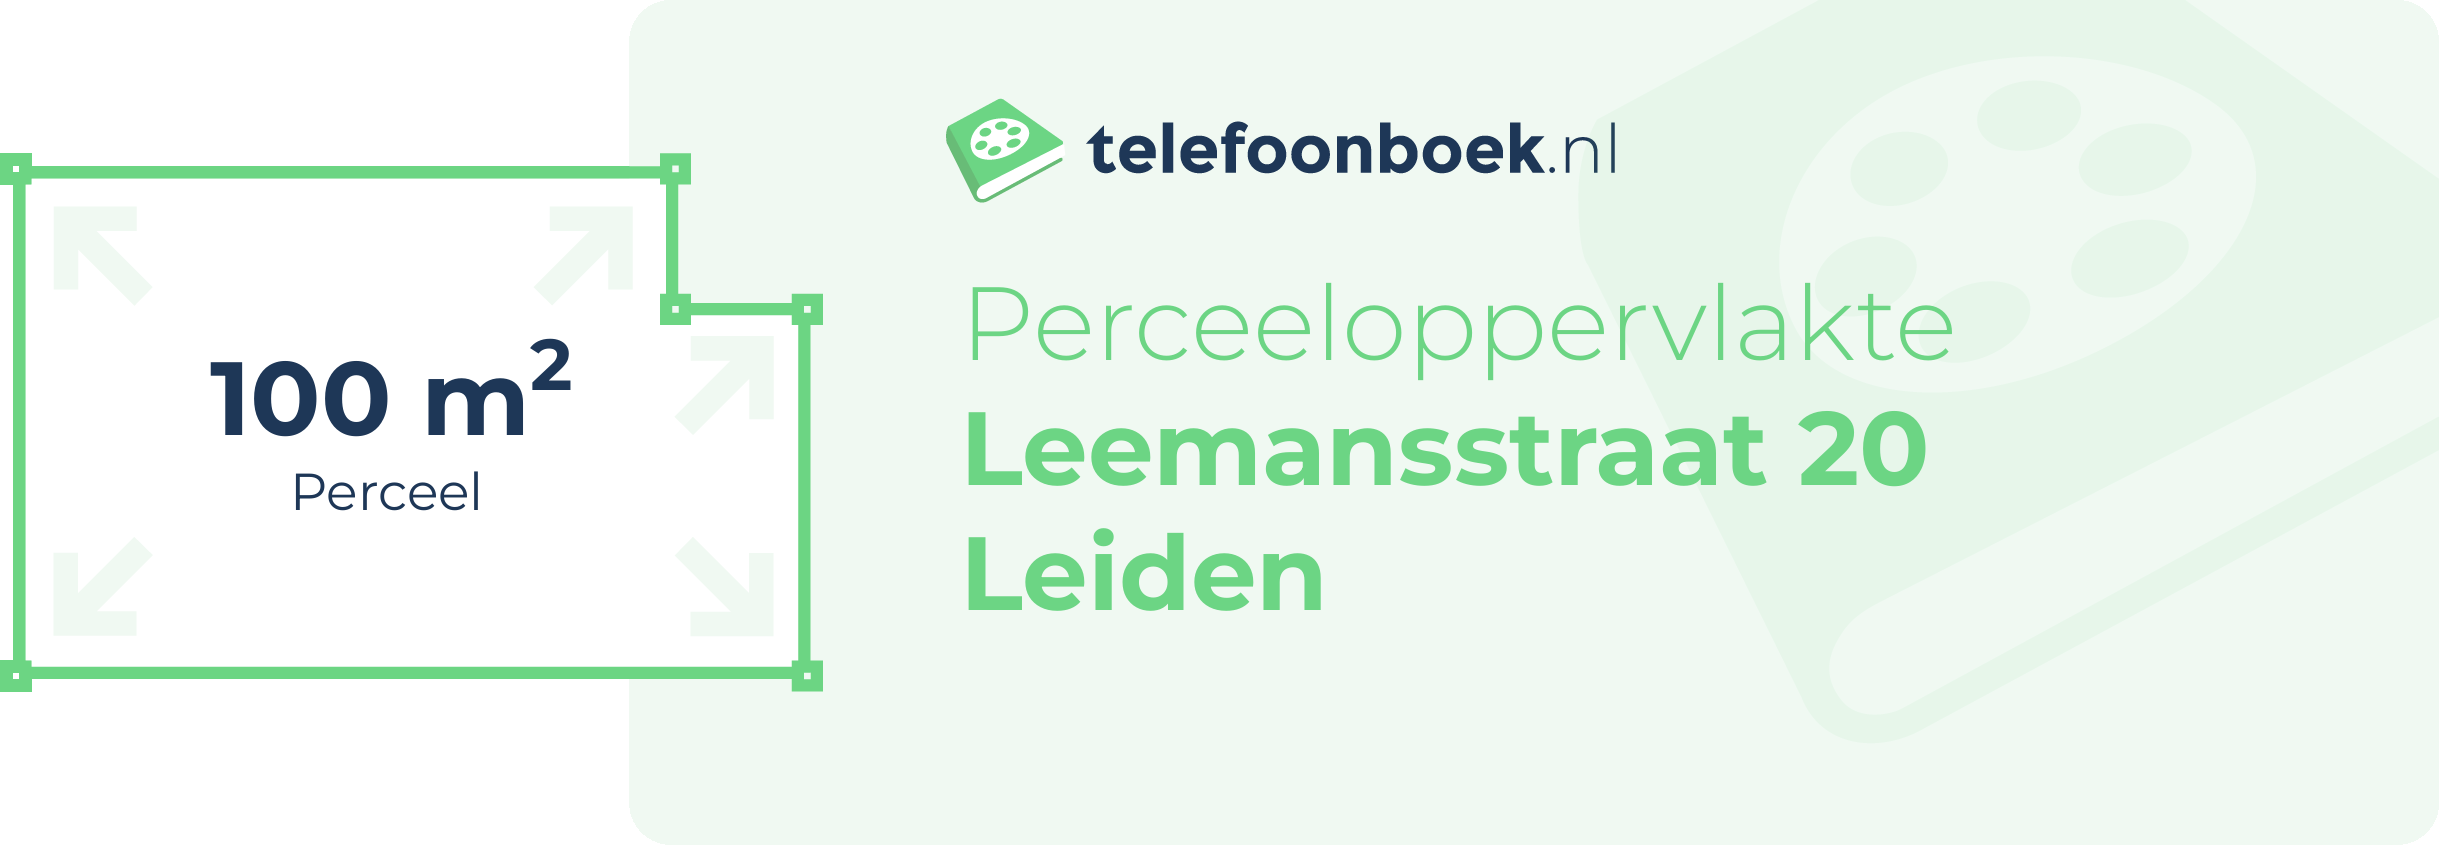 Perceeloppervlakte Leemansstraat 20 Leiden